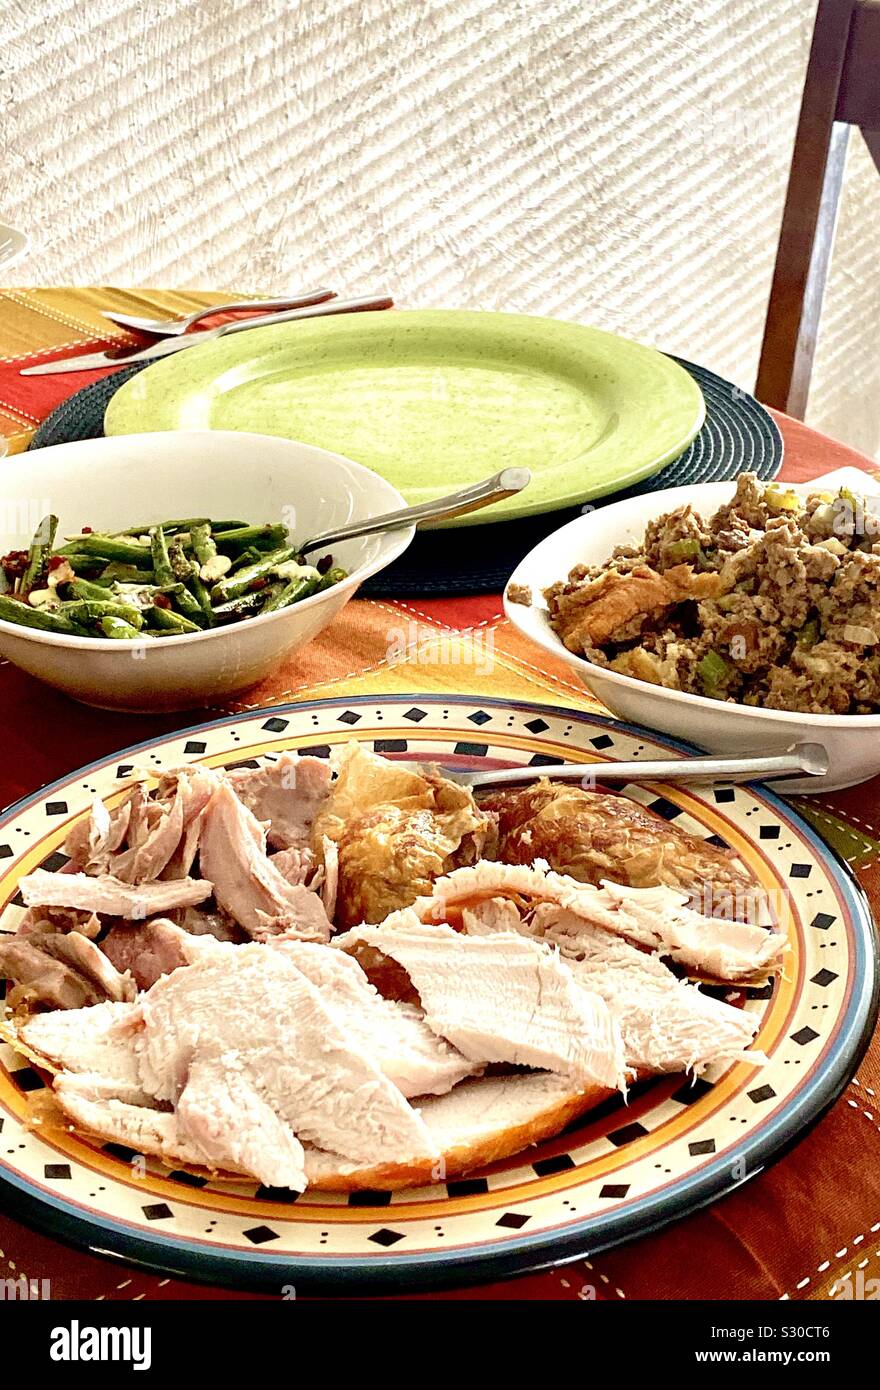 Turkey dinner Stock Photo